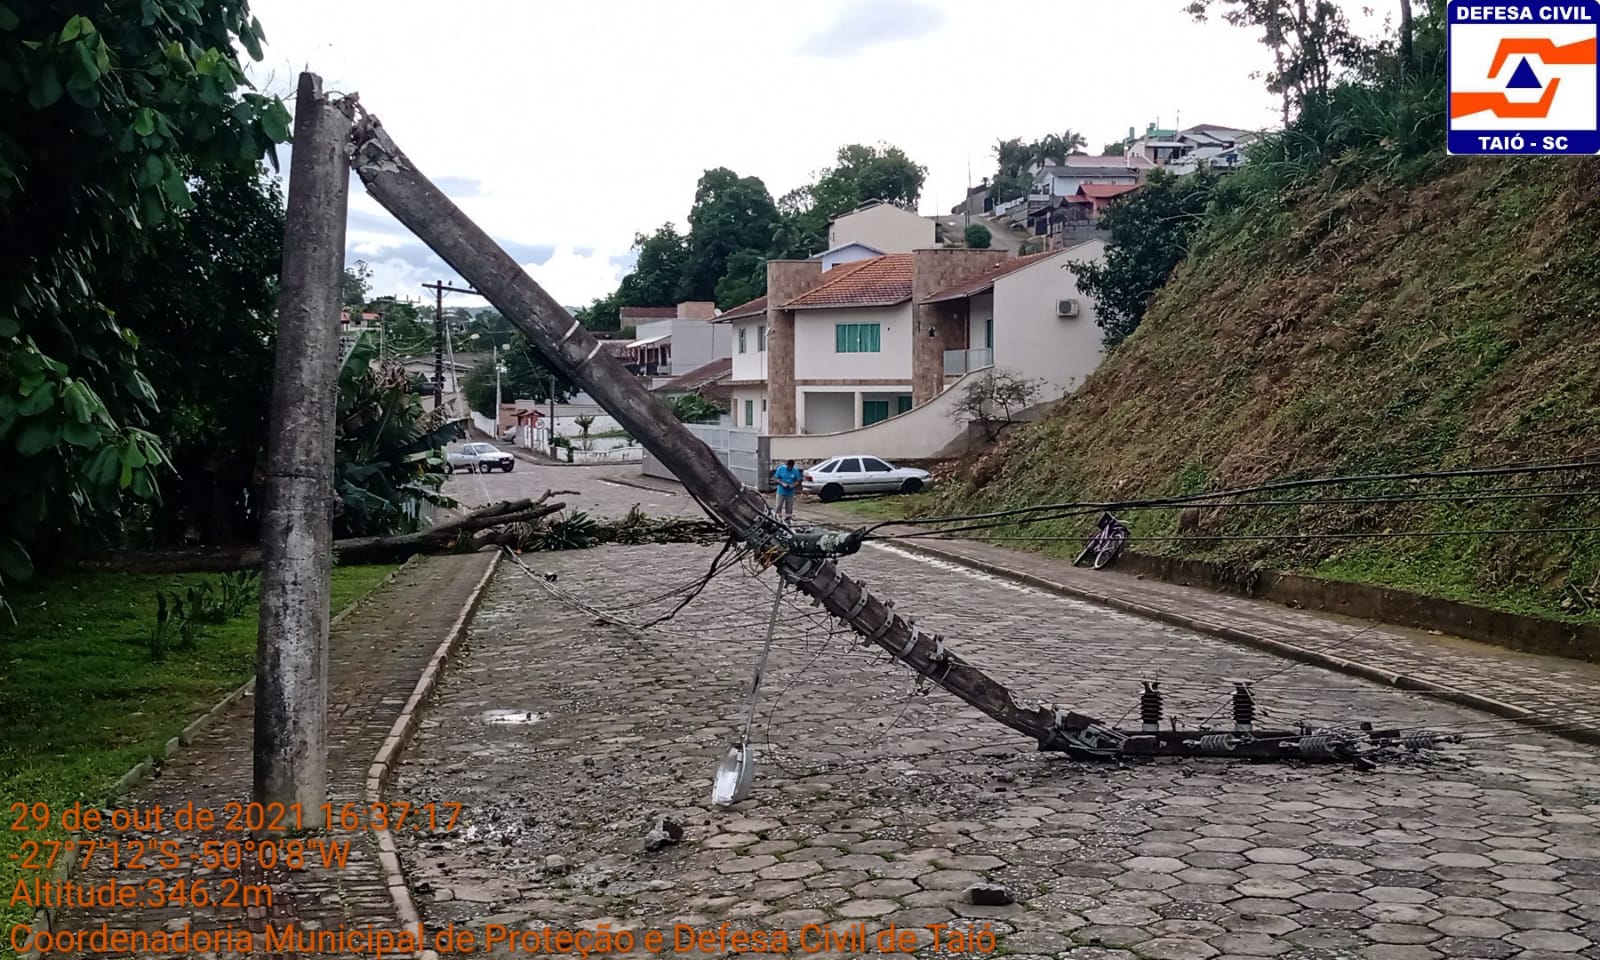 Aviso Defesa Civil: Temporais nesta quarta-feira em todo o estado de Santa Catarina